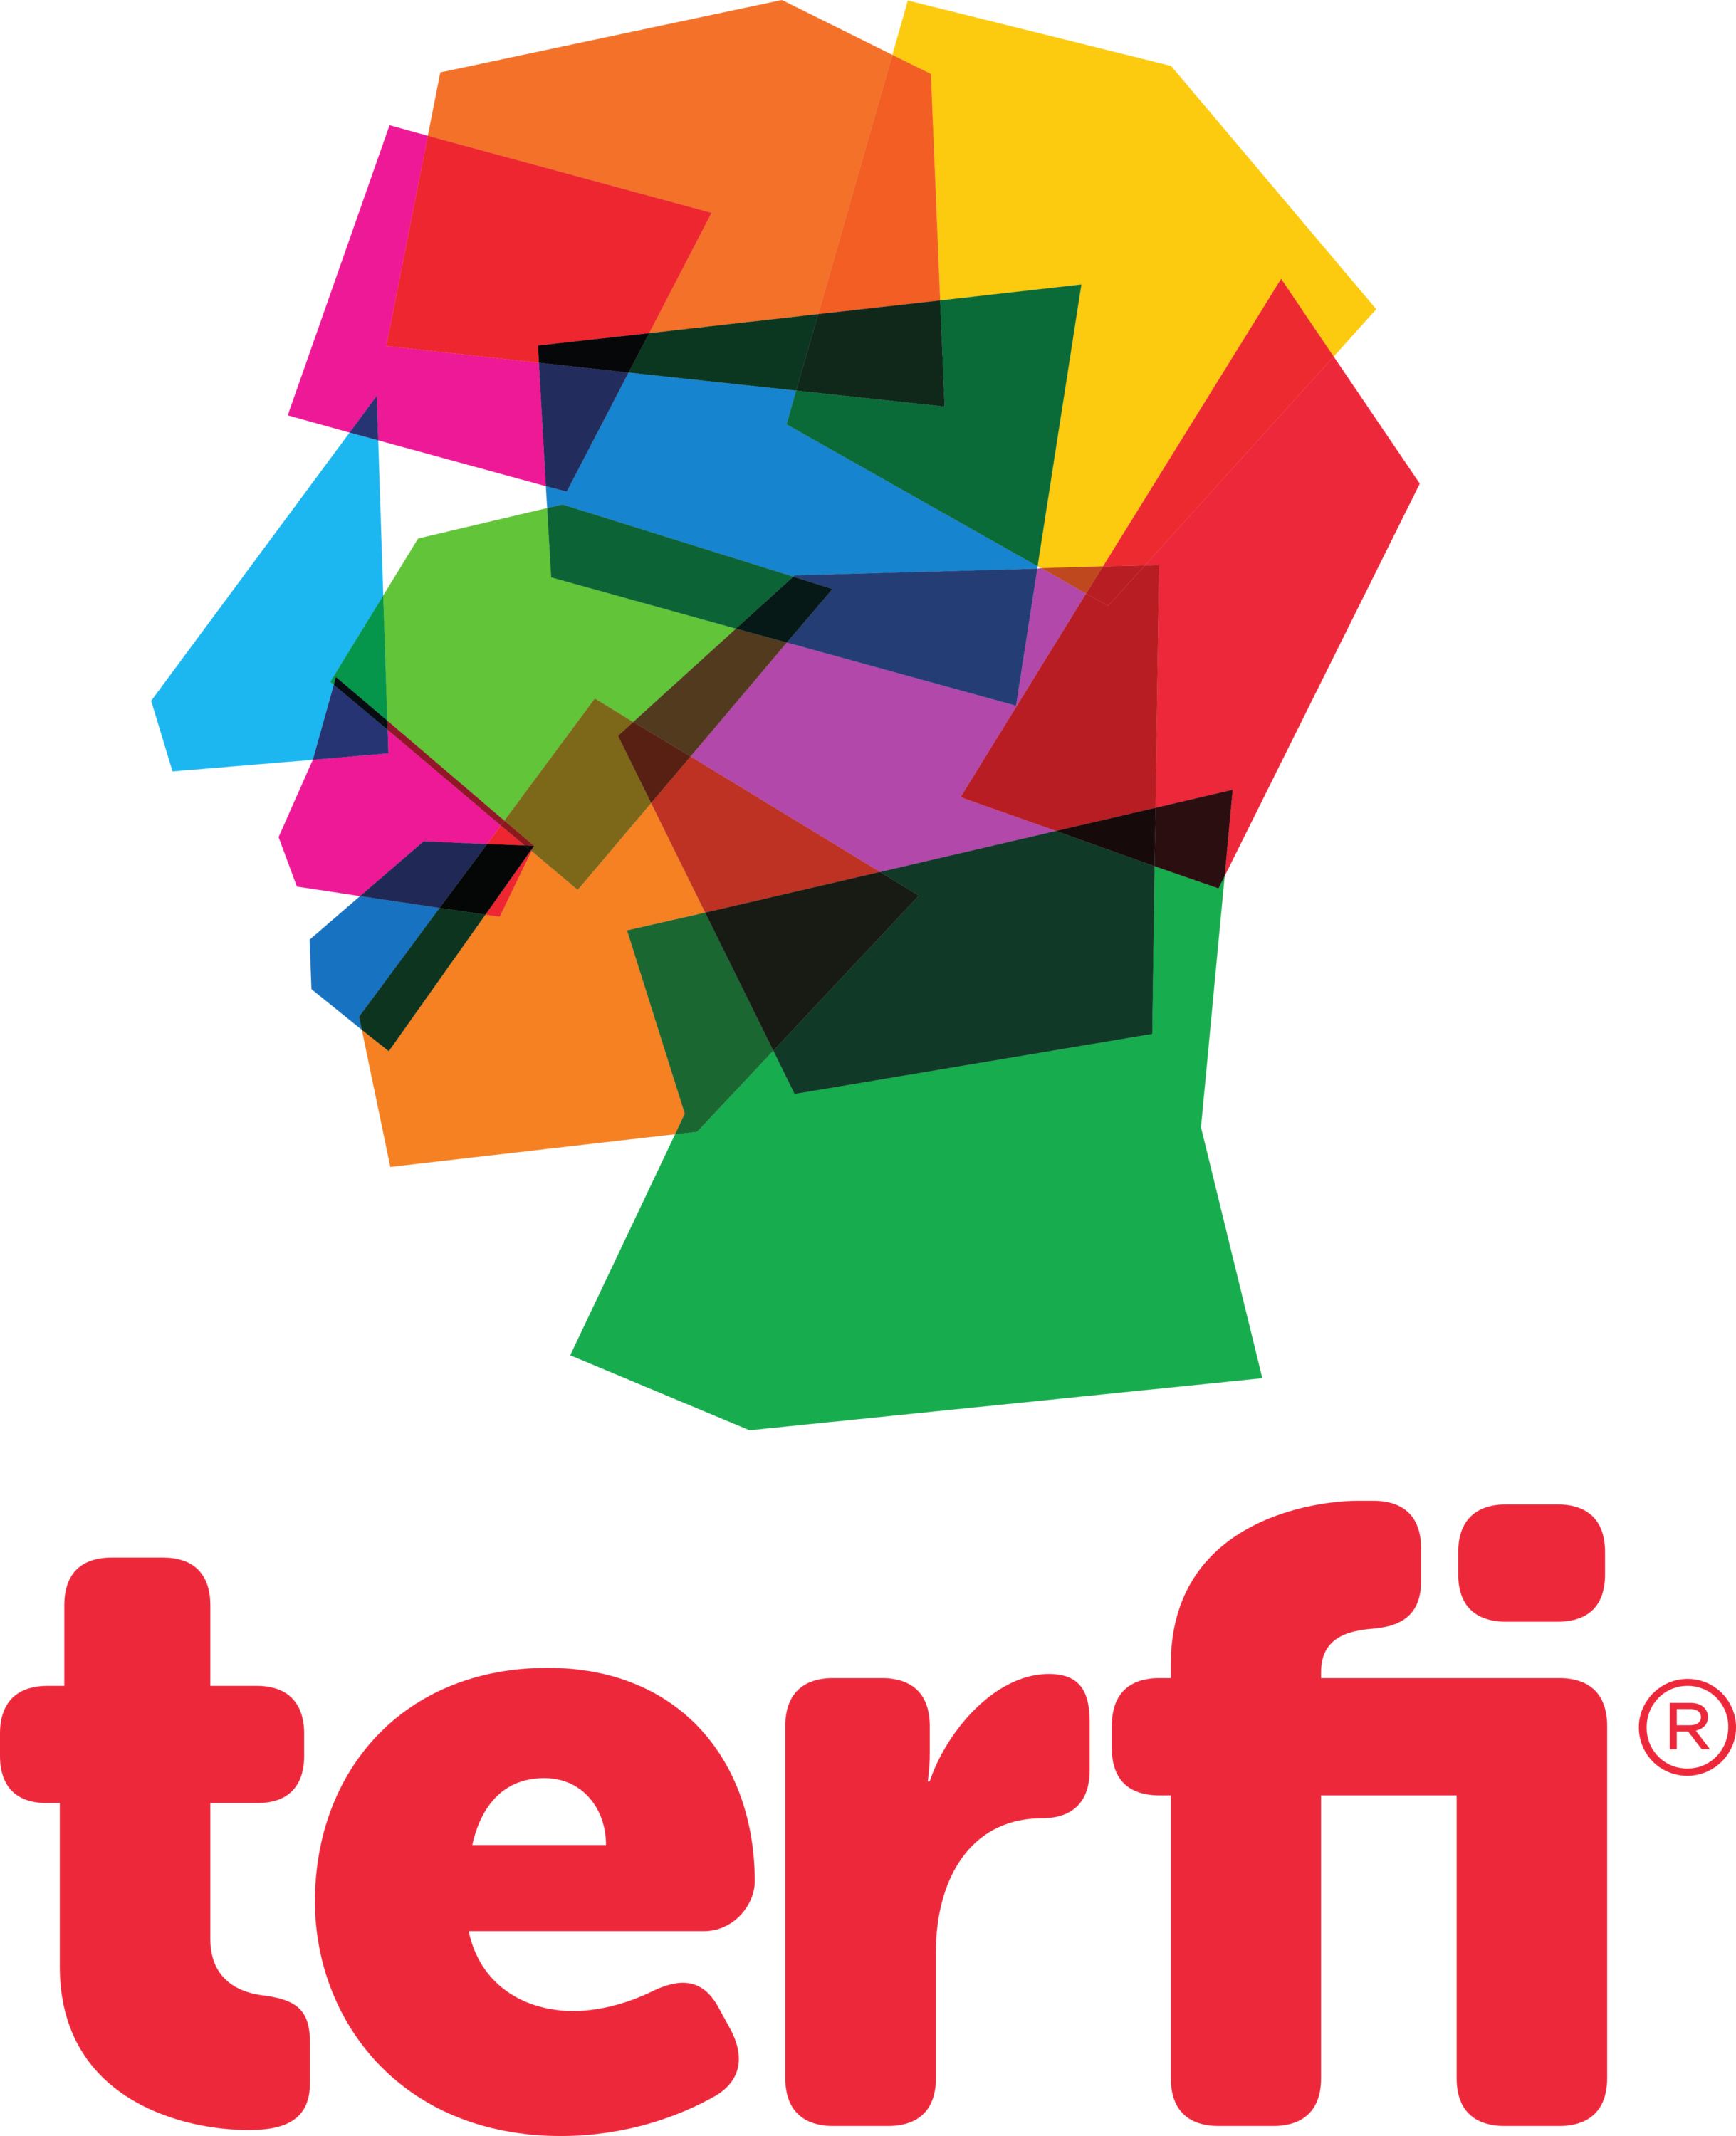 Terfi Human Resources Advertising Agency Logo